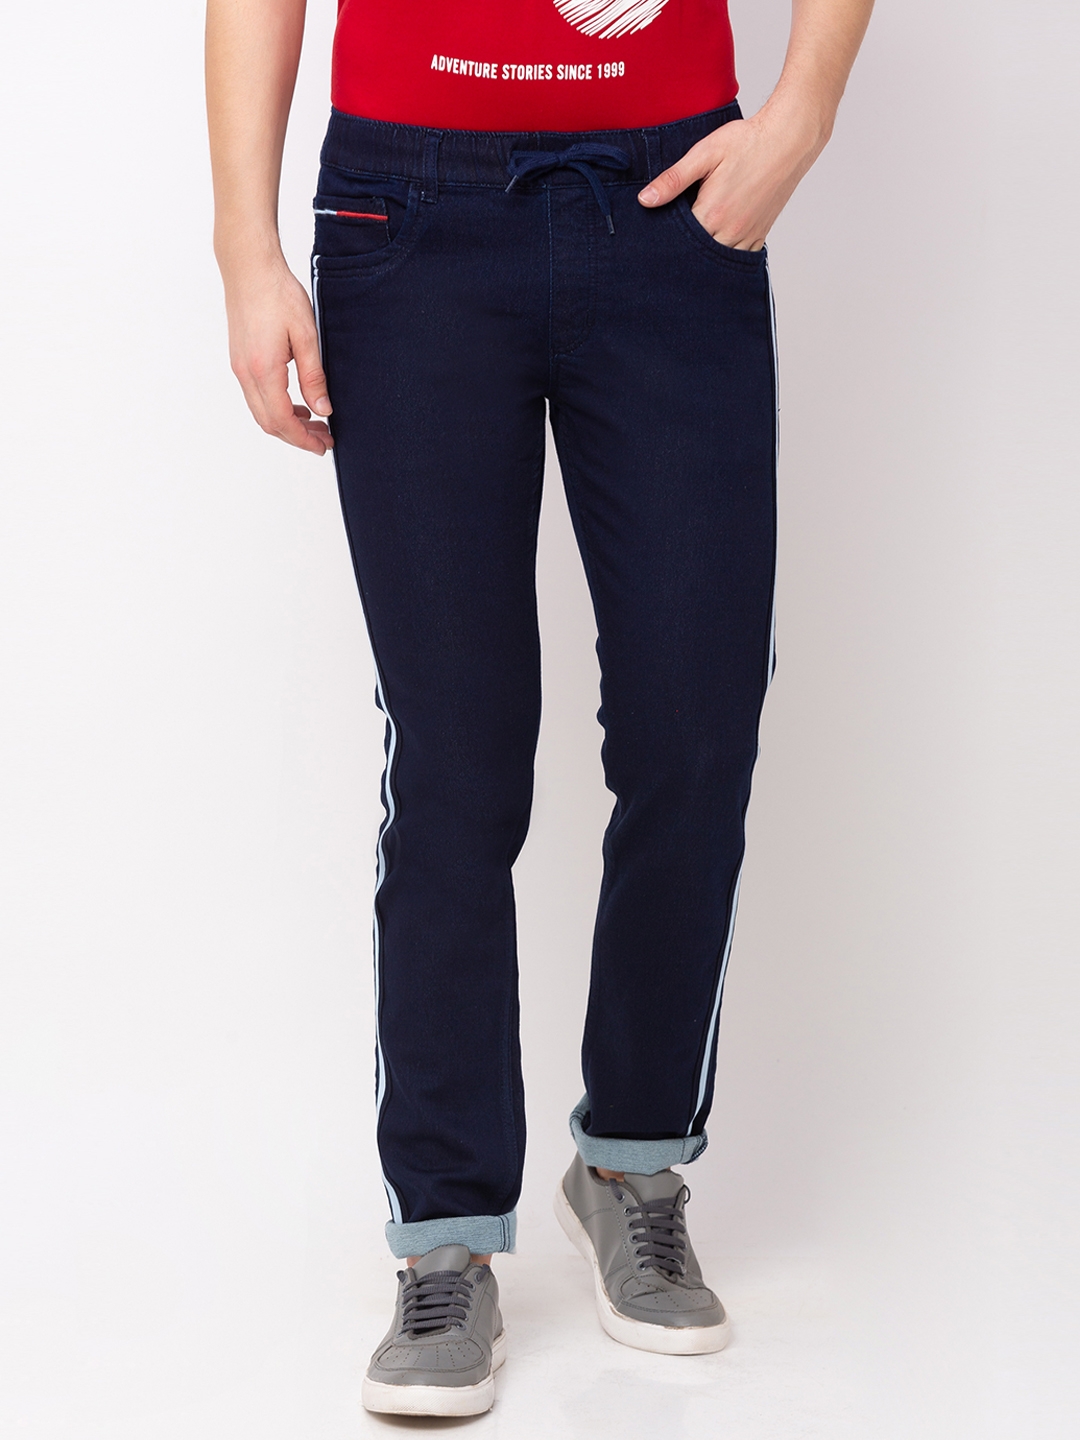 Men's Blue Polycotton Striped Joggers Jeans